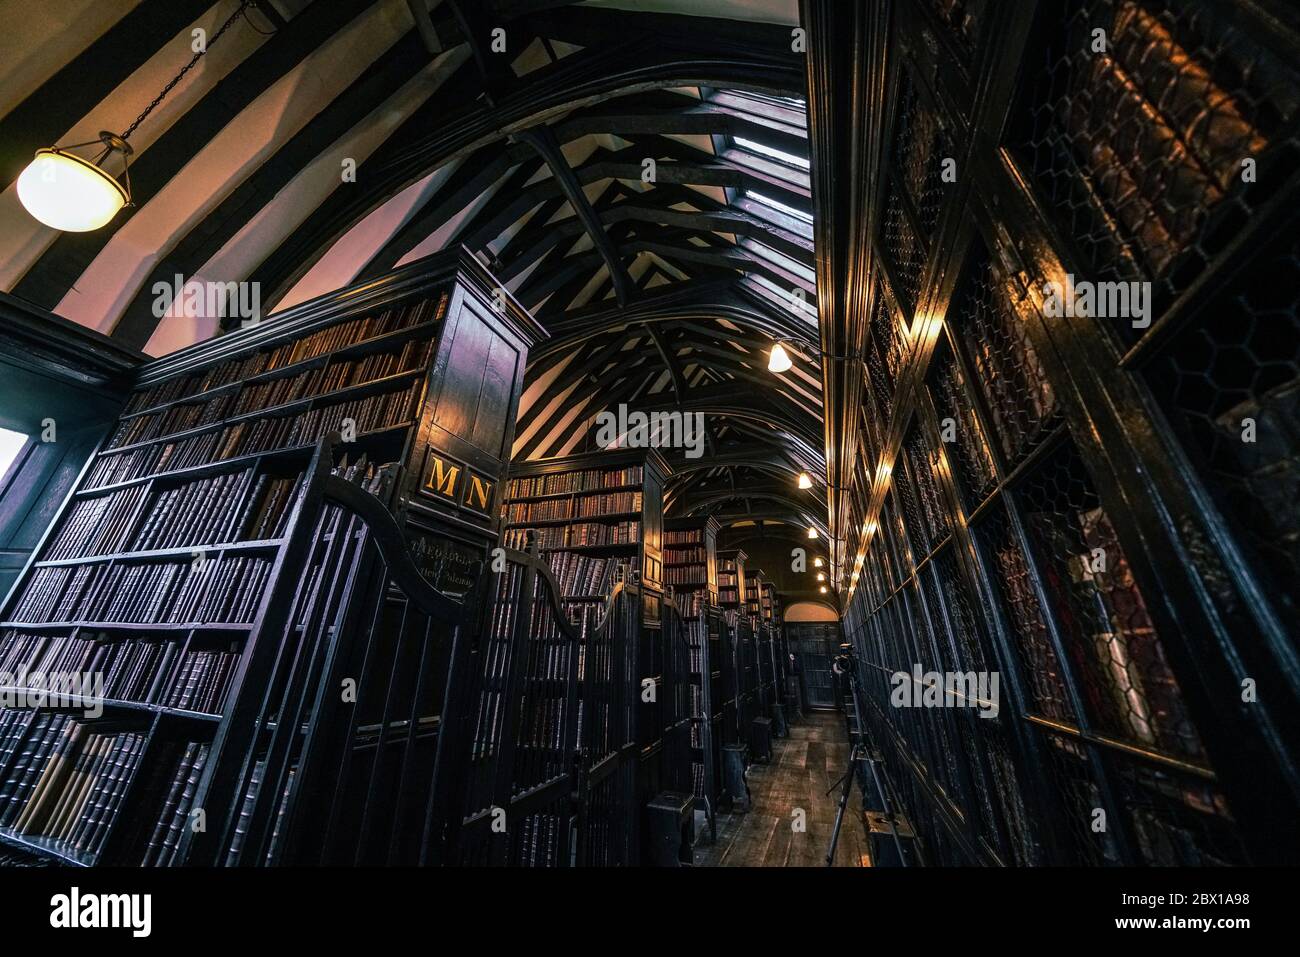 Manchester, Regno Unito - 03.11.2018. Biblioteca Chetham - biblioteca pubblica gratuita per oltre 350 anni. La più antica biblioteca del mondo di lingua inglese. Foto Stock